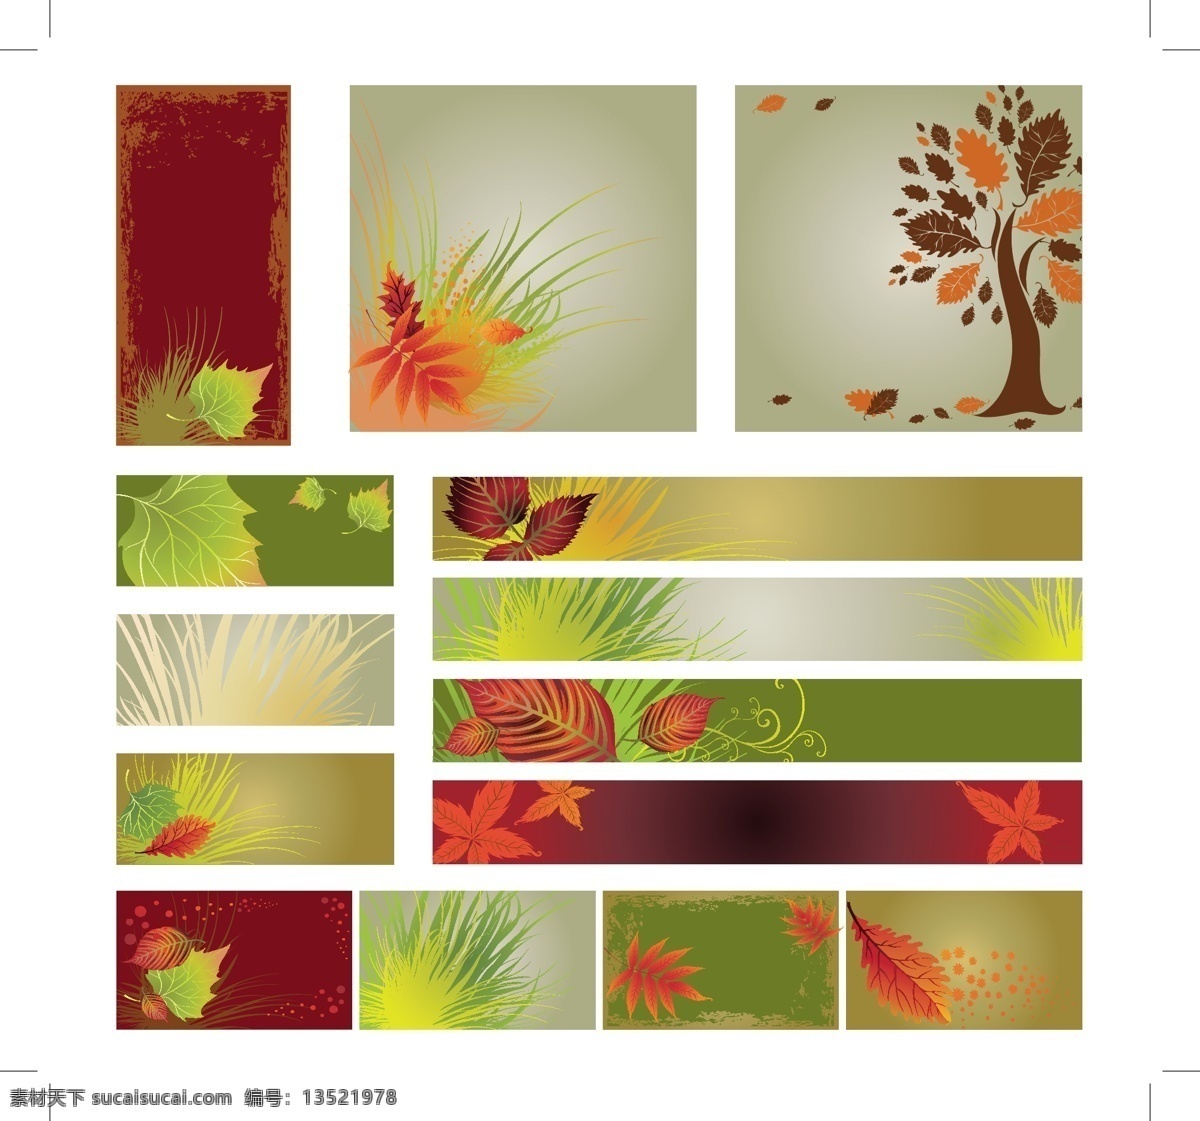 丰富多彩 秋天 树叶 矢量 横幅 集 web 背景 插画 创意 免费 叶 病 媒 生物 时尚 独特的 原始的 新鲜的 设计设计横幅 丰富多彩的 psd源文件